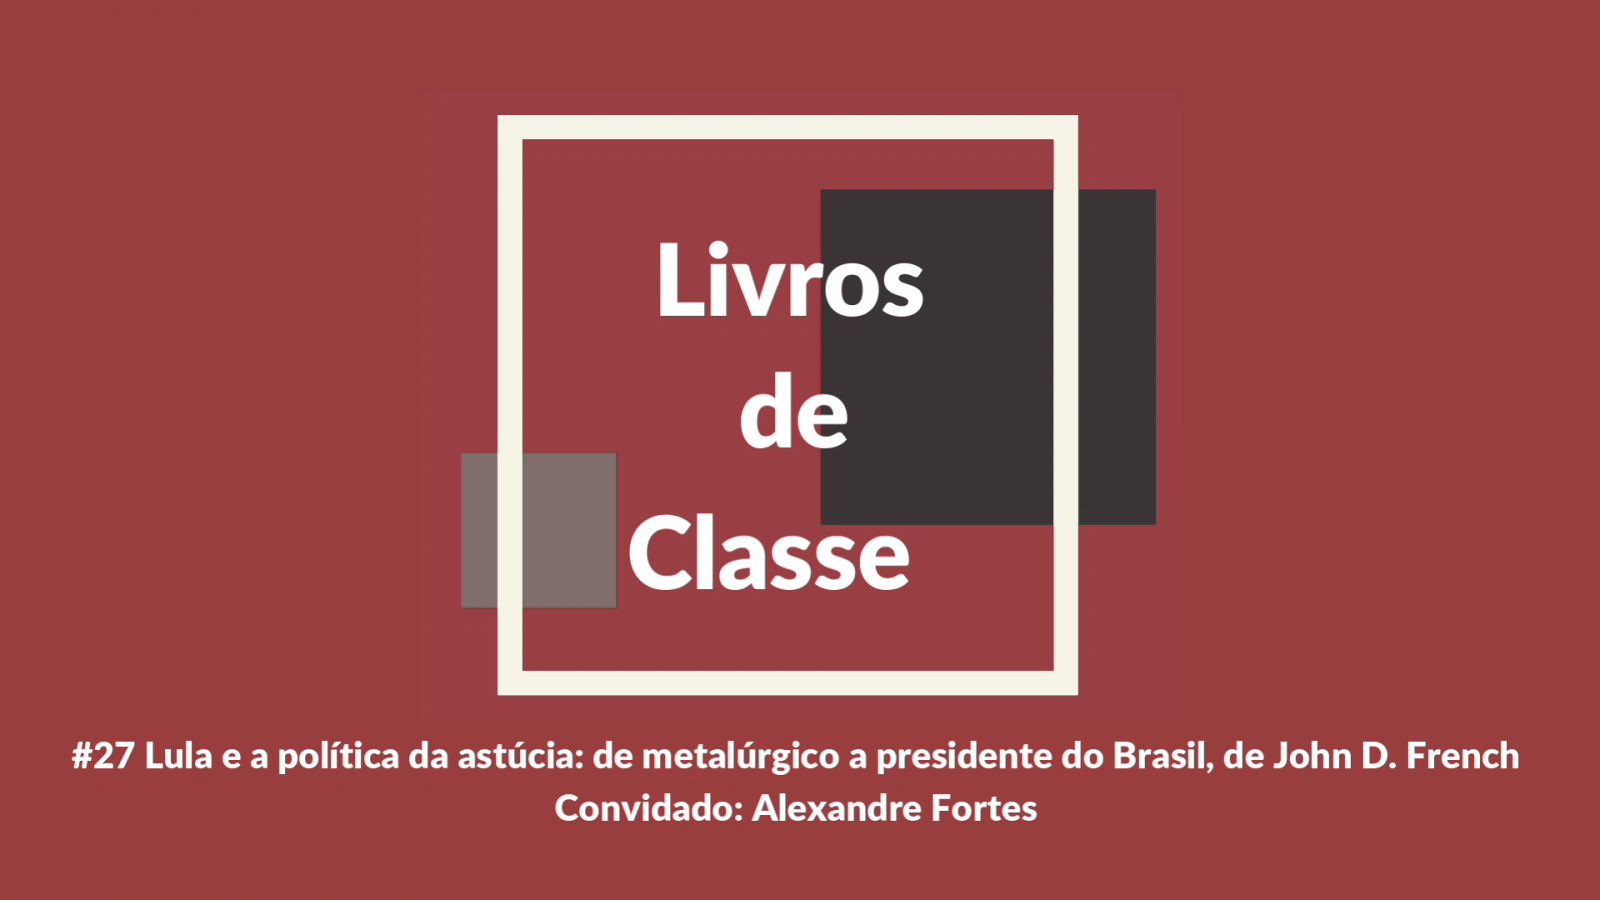 Livros de Classe #27: Lula e a política da astúcia: de metalúrgico a presidente do Brasil, de John French, por Alexandre Fortes